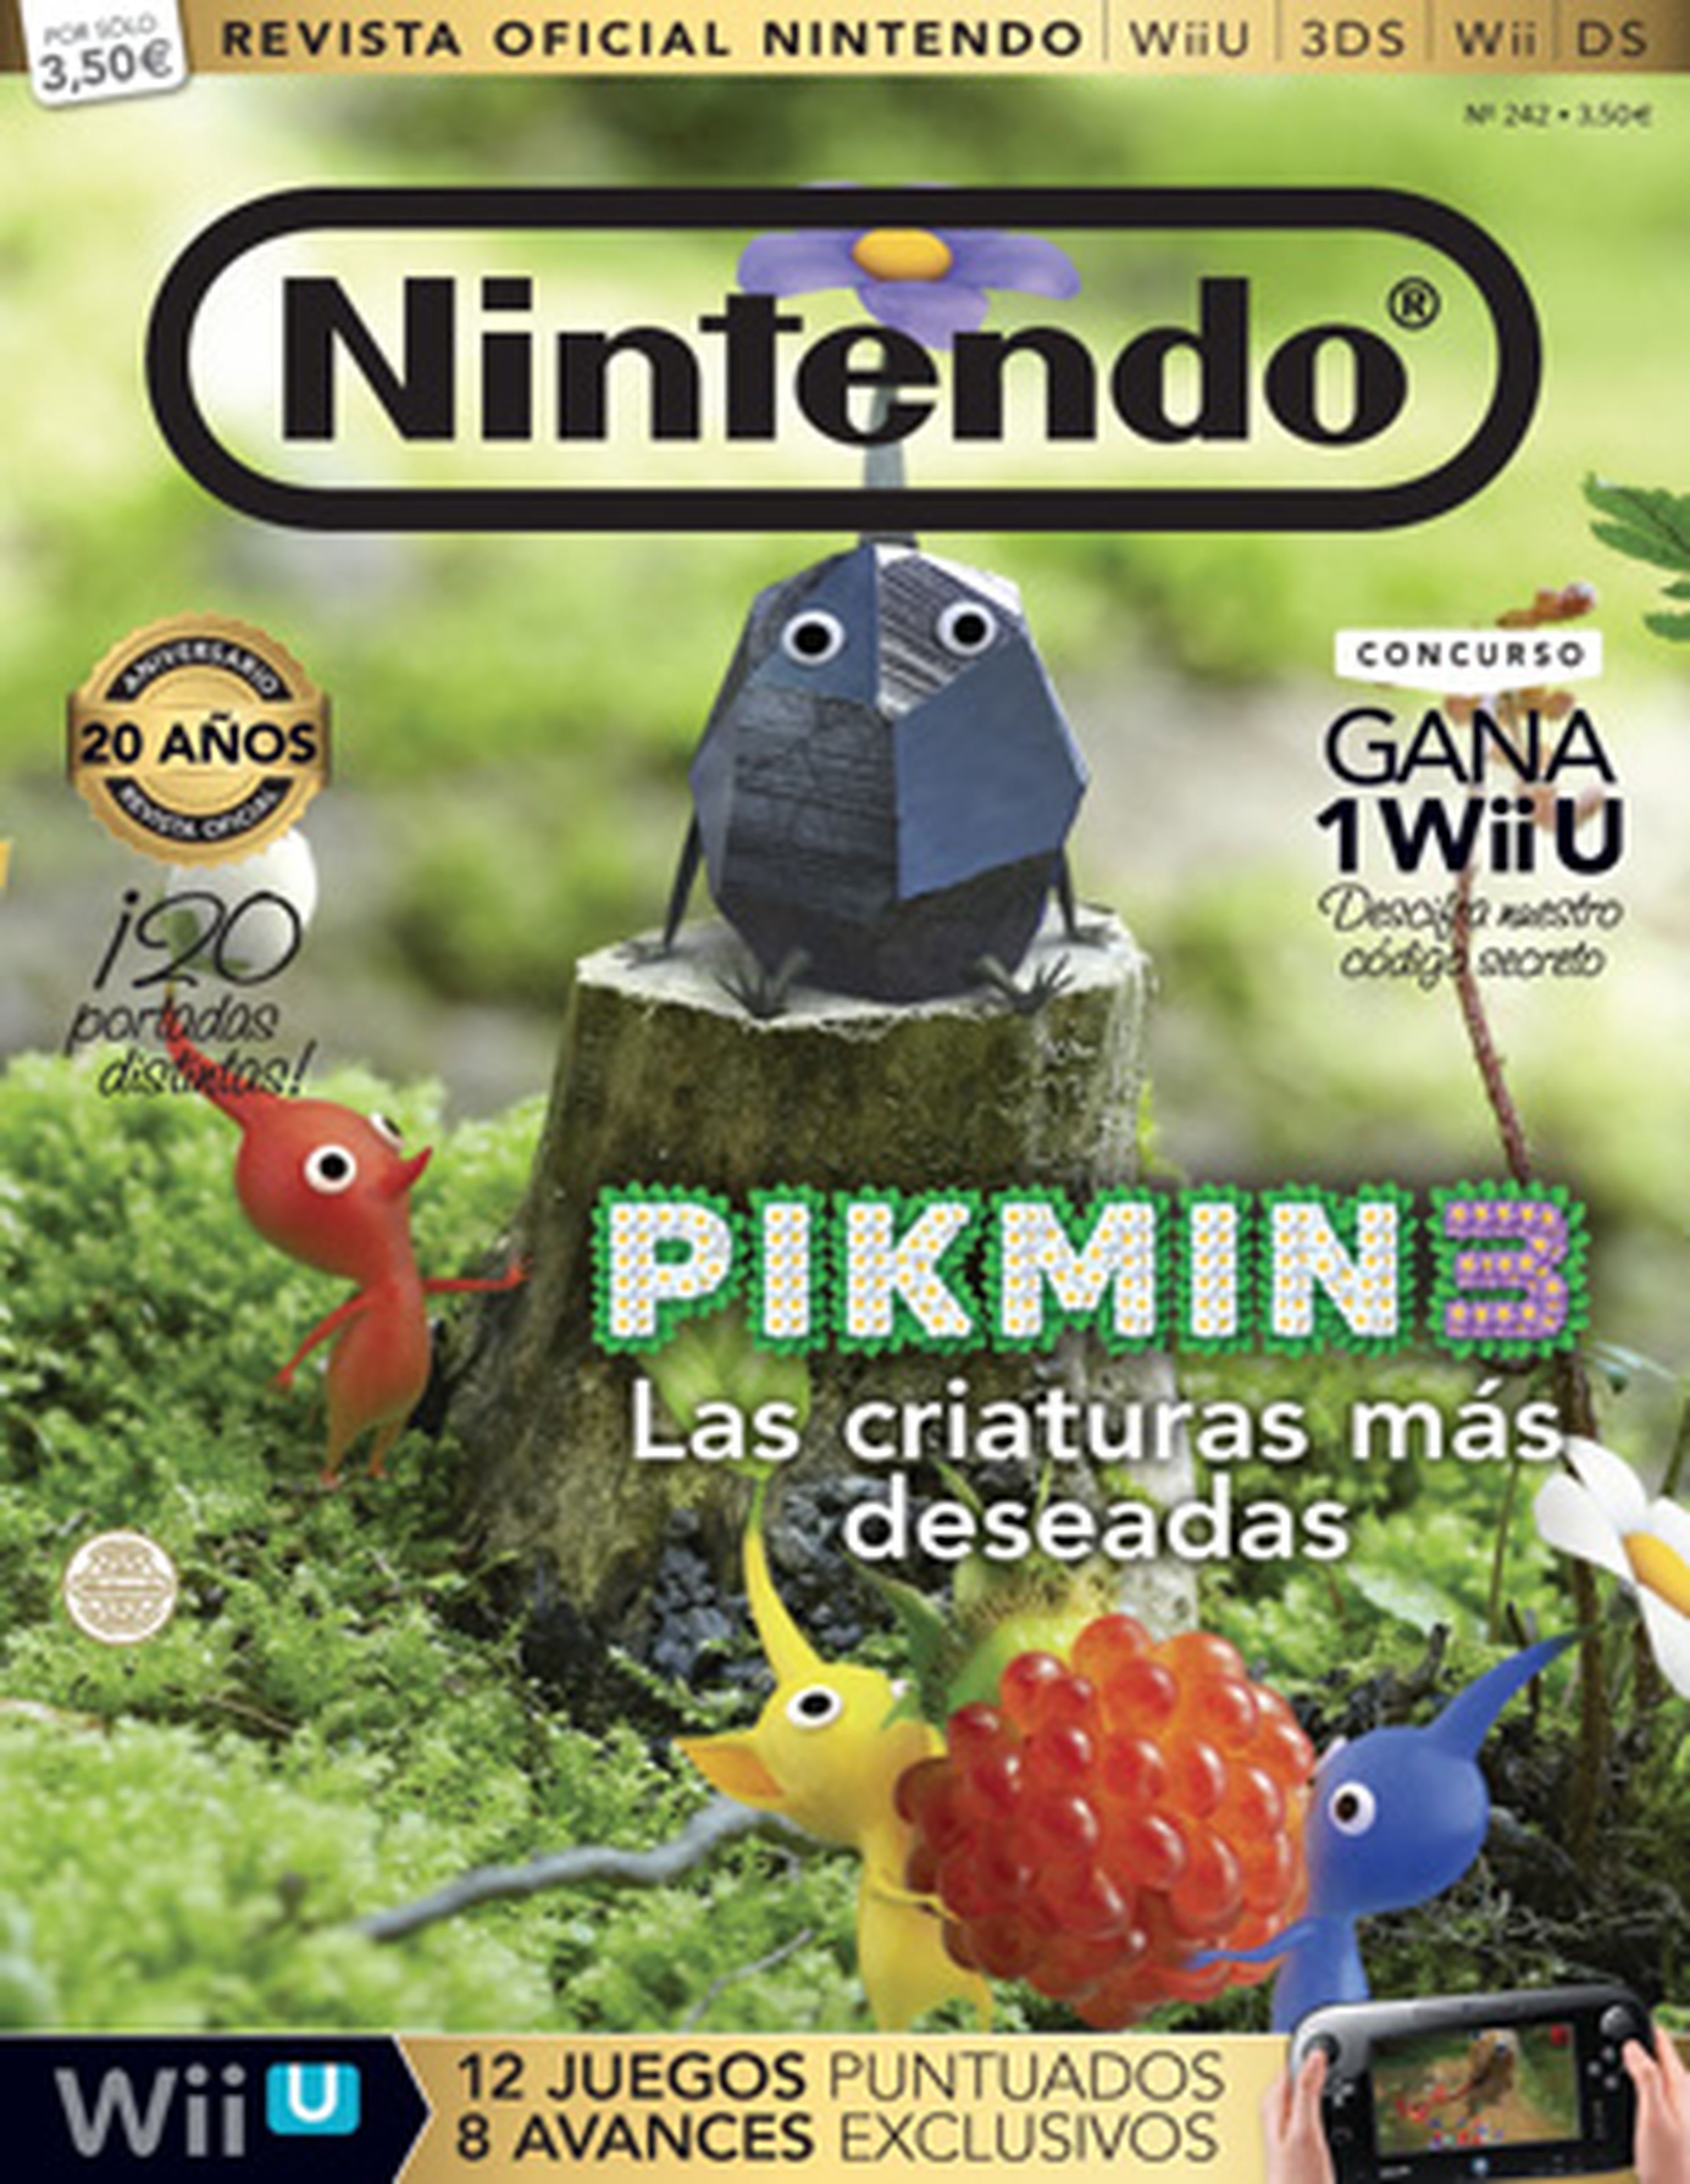 20 años de Revista Oficial, 20 portadas de Wii U